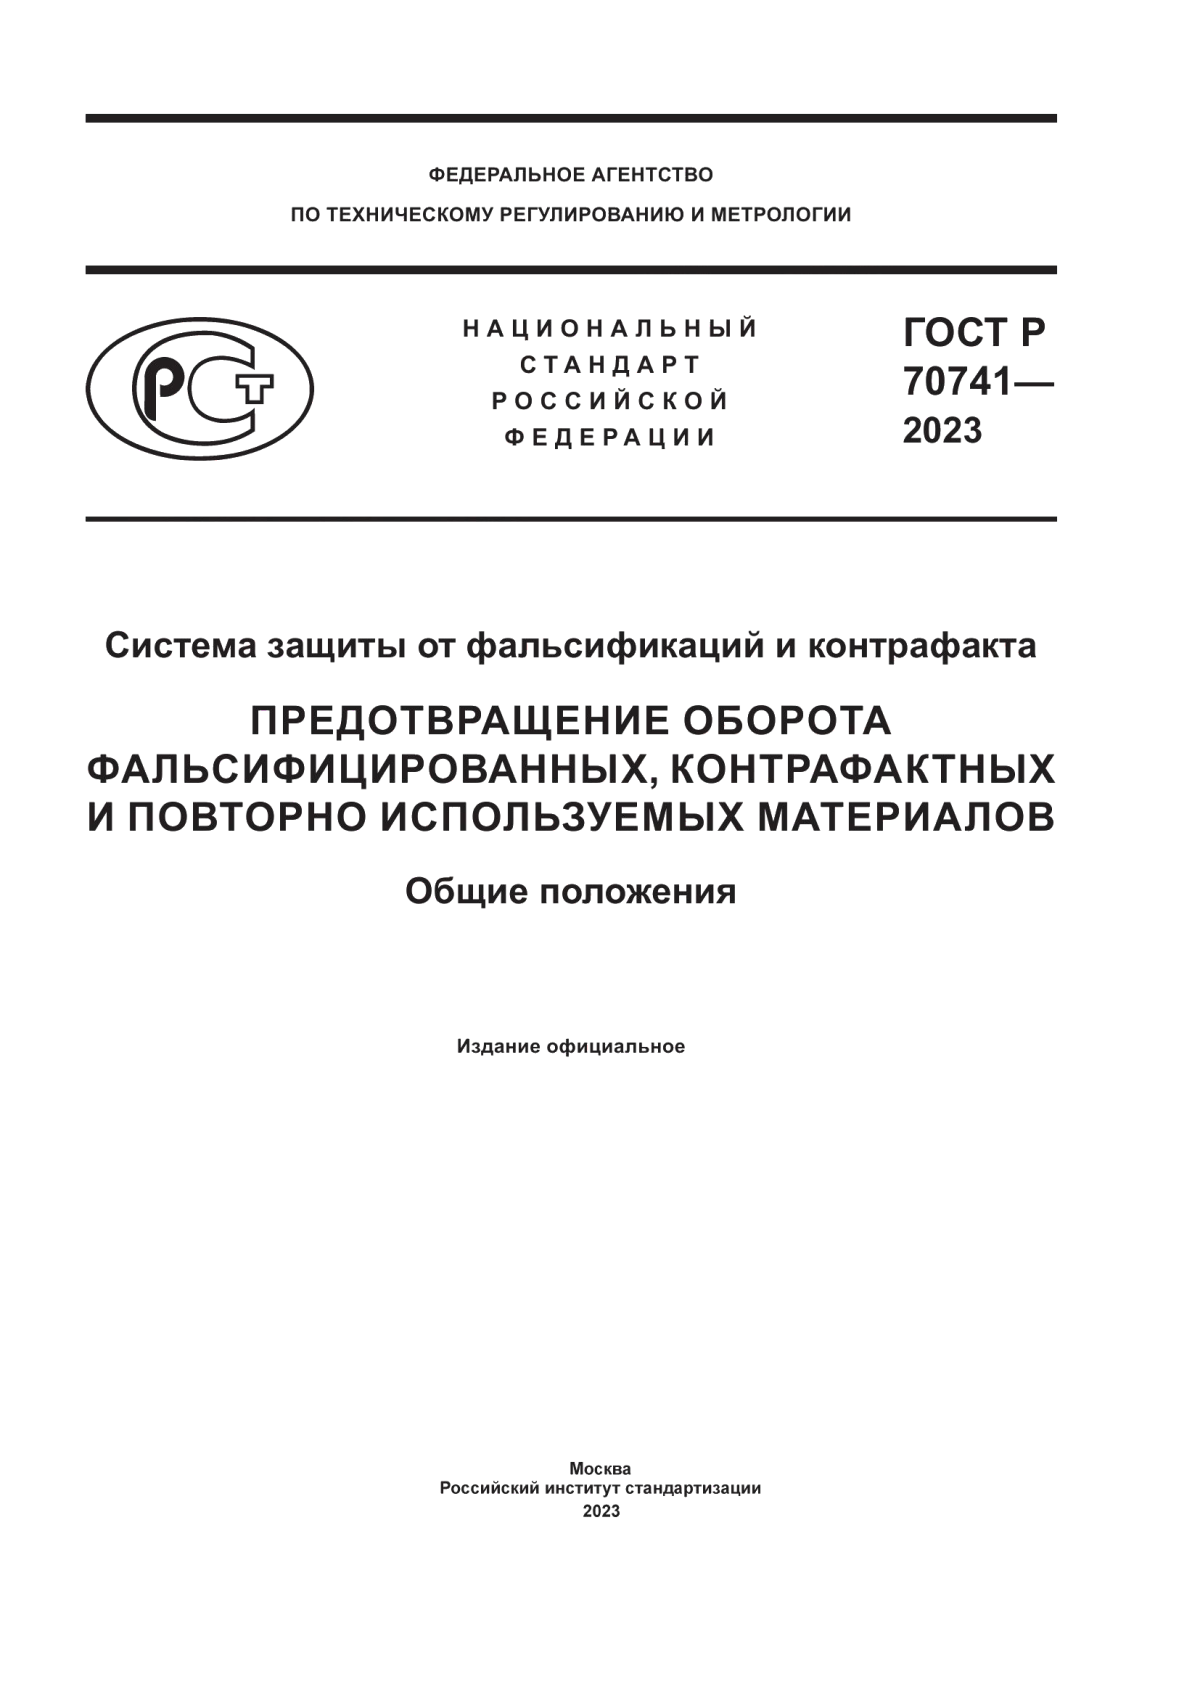 ГОСТ Р 70741-2023 Система защиты от фальсификаций и контрафакта. Предотвращение оборота фальсифицированных, контрафактных и повторно используемых материалов. Общие положения